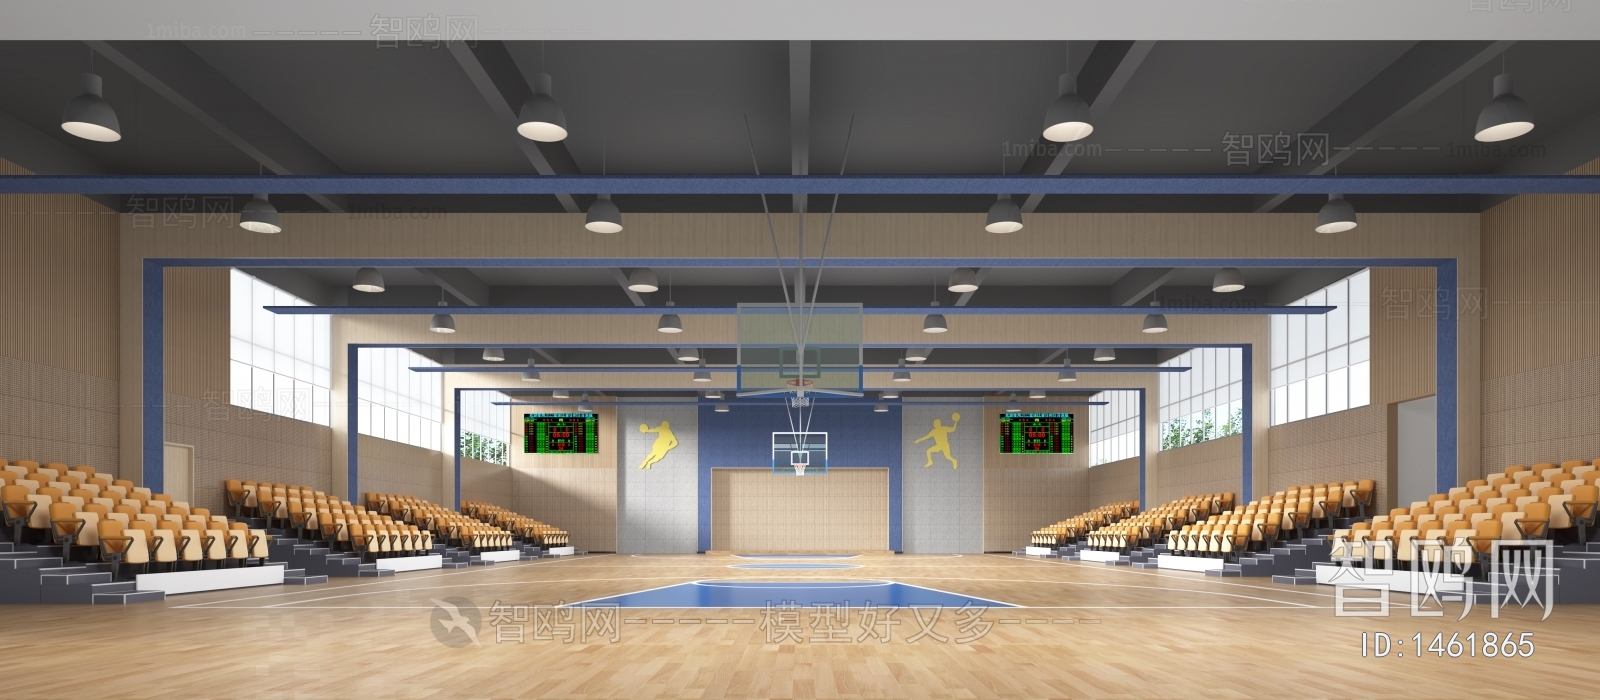 现代学校篮球场